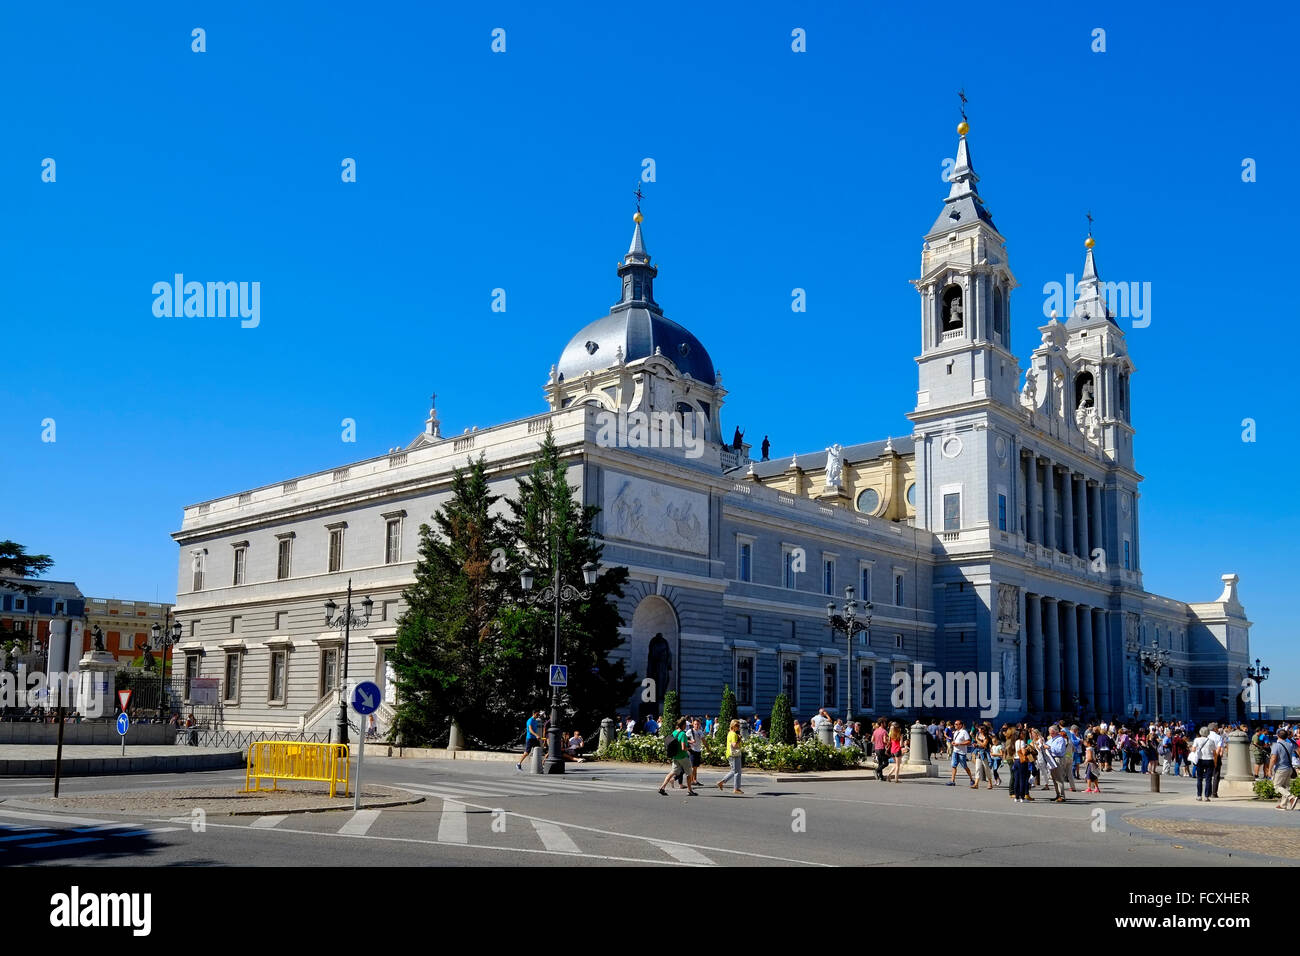 Almudena cathédrale catholique du diocèse de Madrid Espagne ES Banque D'Images